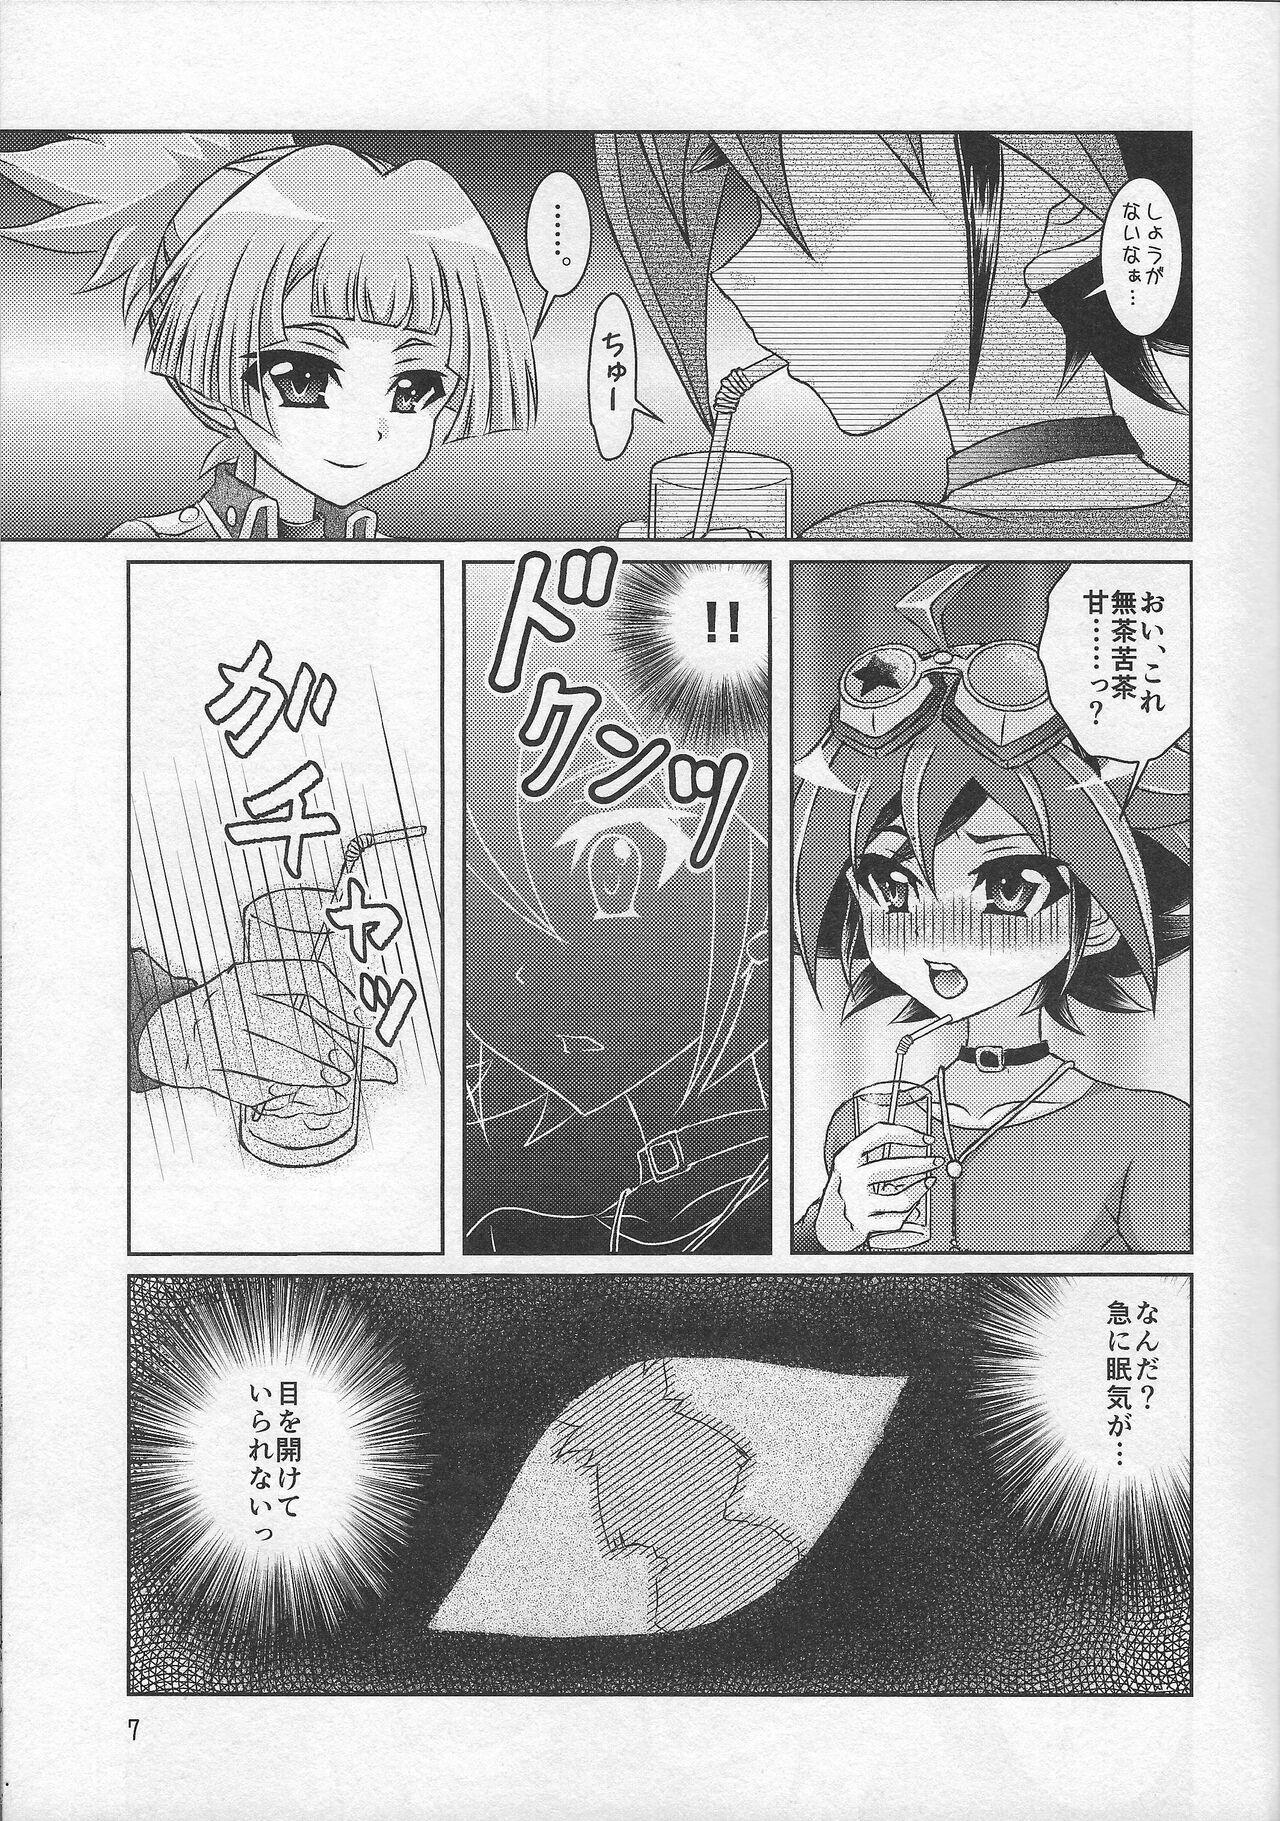 All Natural Yuya wa boku dake no seiai omocha Yuya wa boku dake no kawai omocha - Yu-gi-oh arc-v Boquete - Page 6